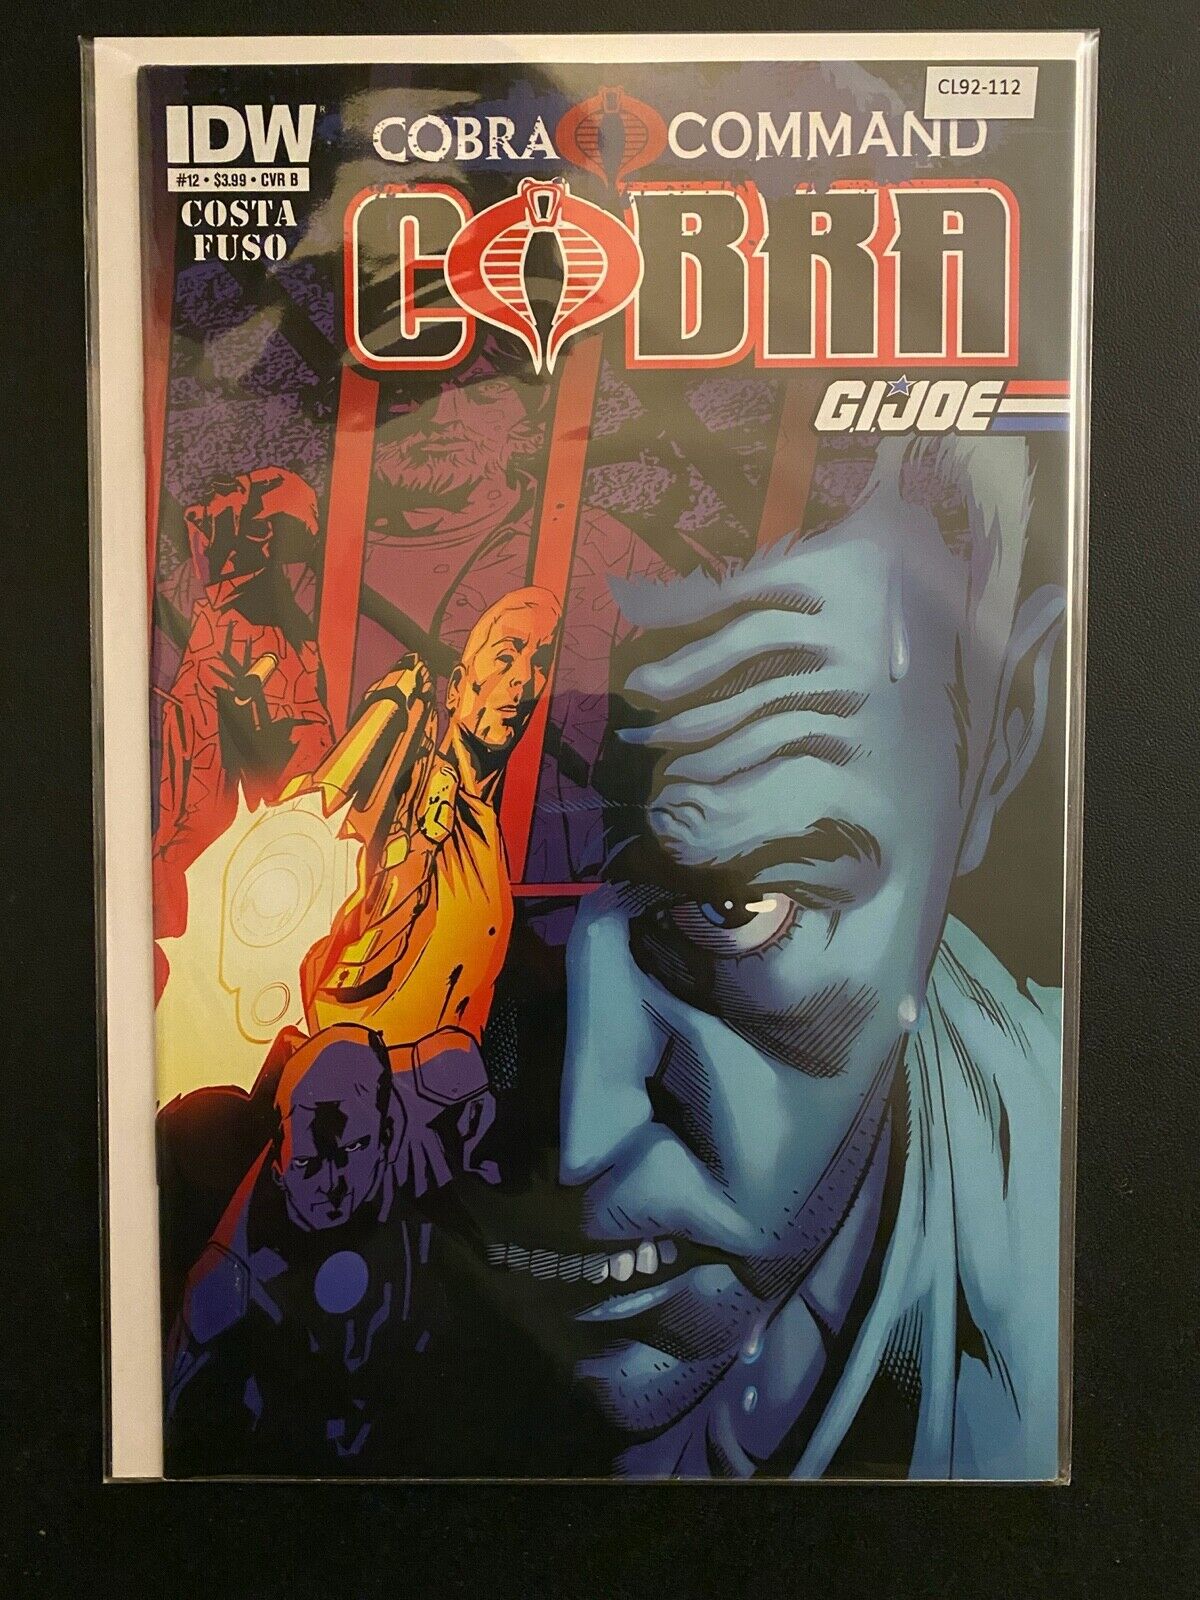 Cobra Command Cobra/G.I. Joe 12 Variant High Grade IDW Comic CL92-112